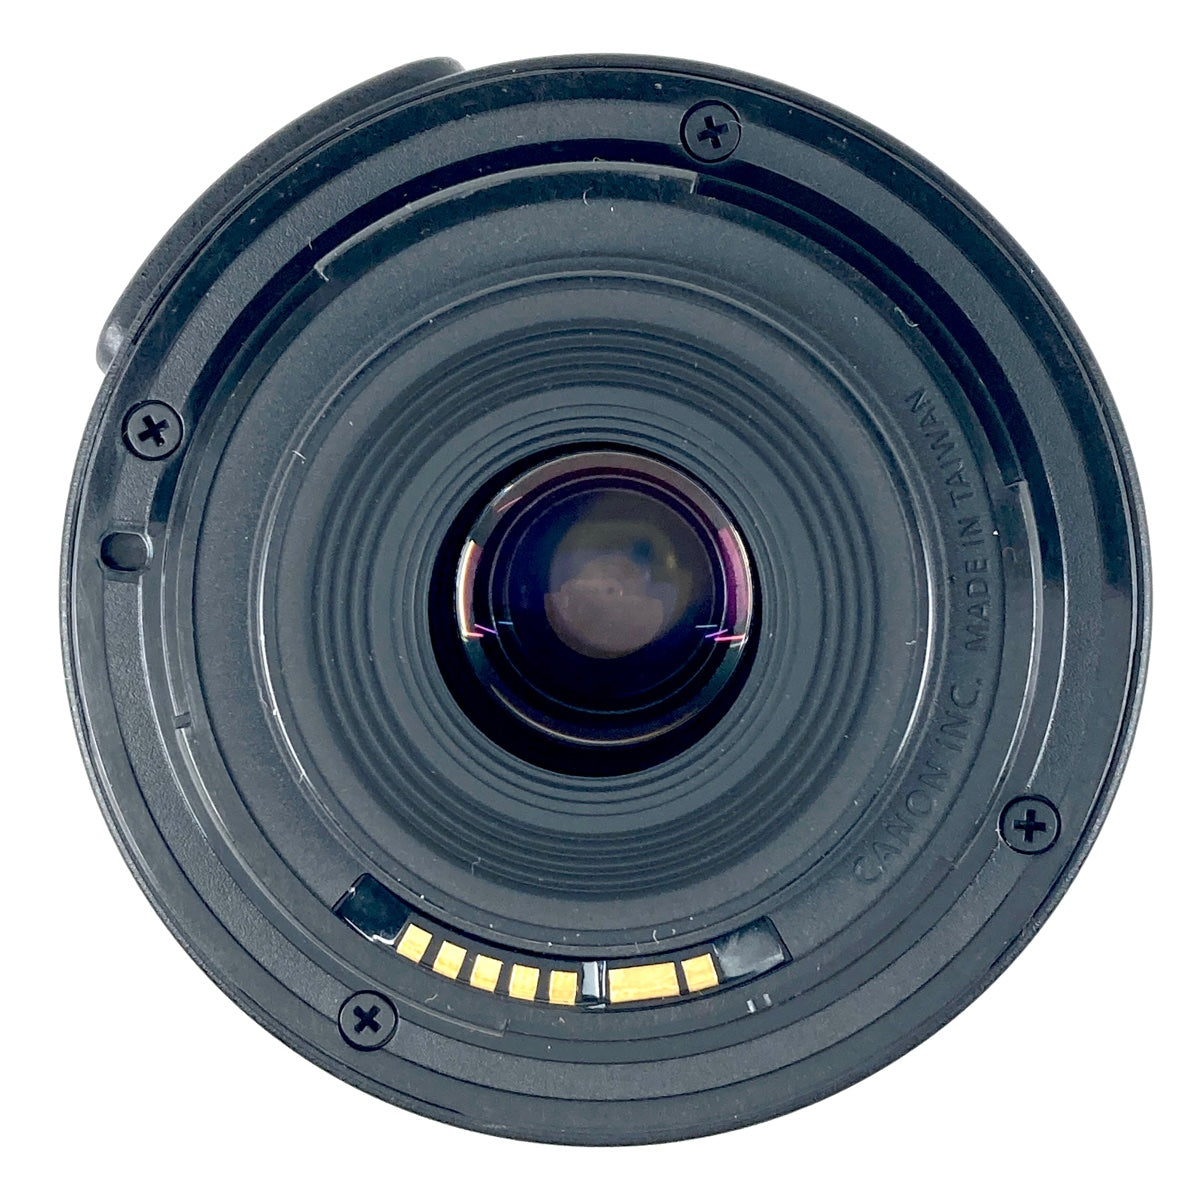 バイセル公式】キヤノン Canon EOS Kiss X5 EF-S 18-55 IS II レンズキット デジタル 一眼レフカメラ 【中古】 -  バイセルブランシェ